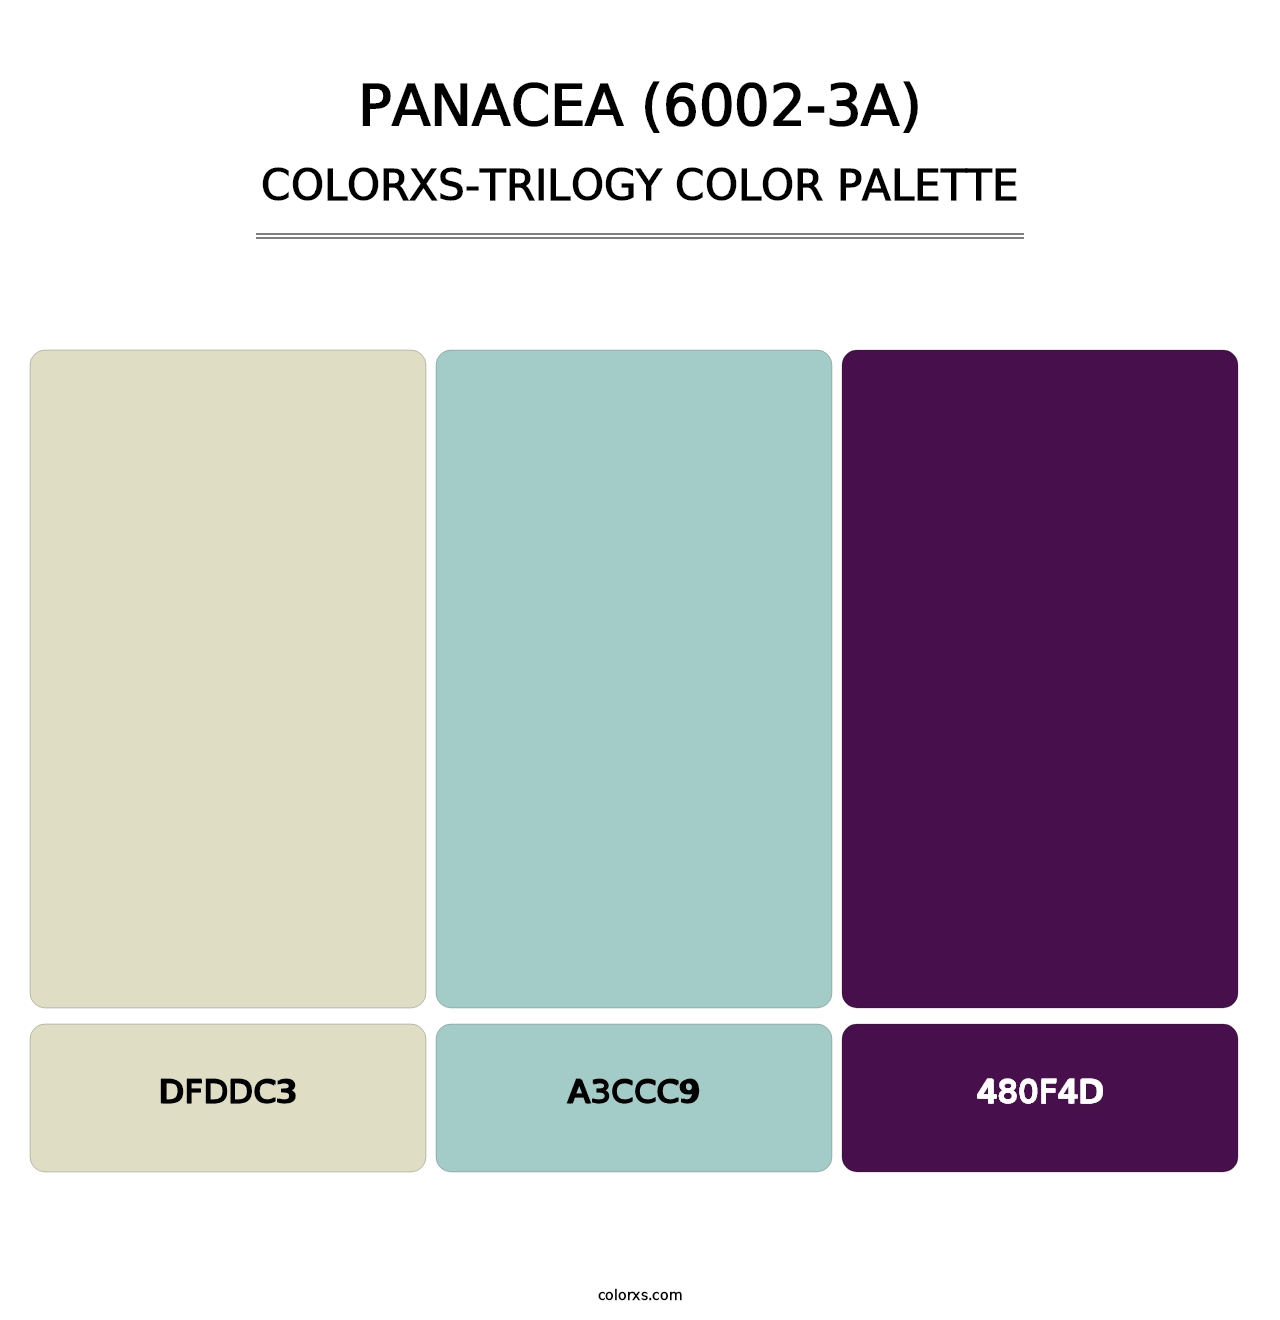 Panacea (6002-3A) - Colorxs Trilogy Palette